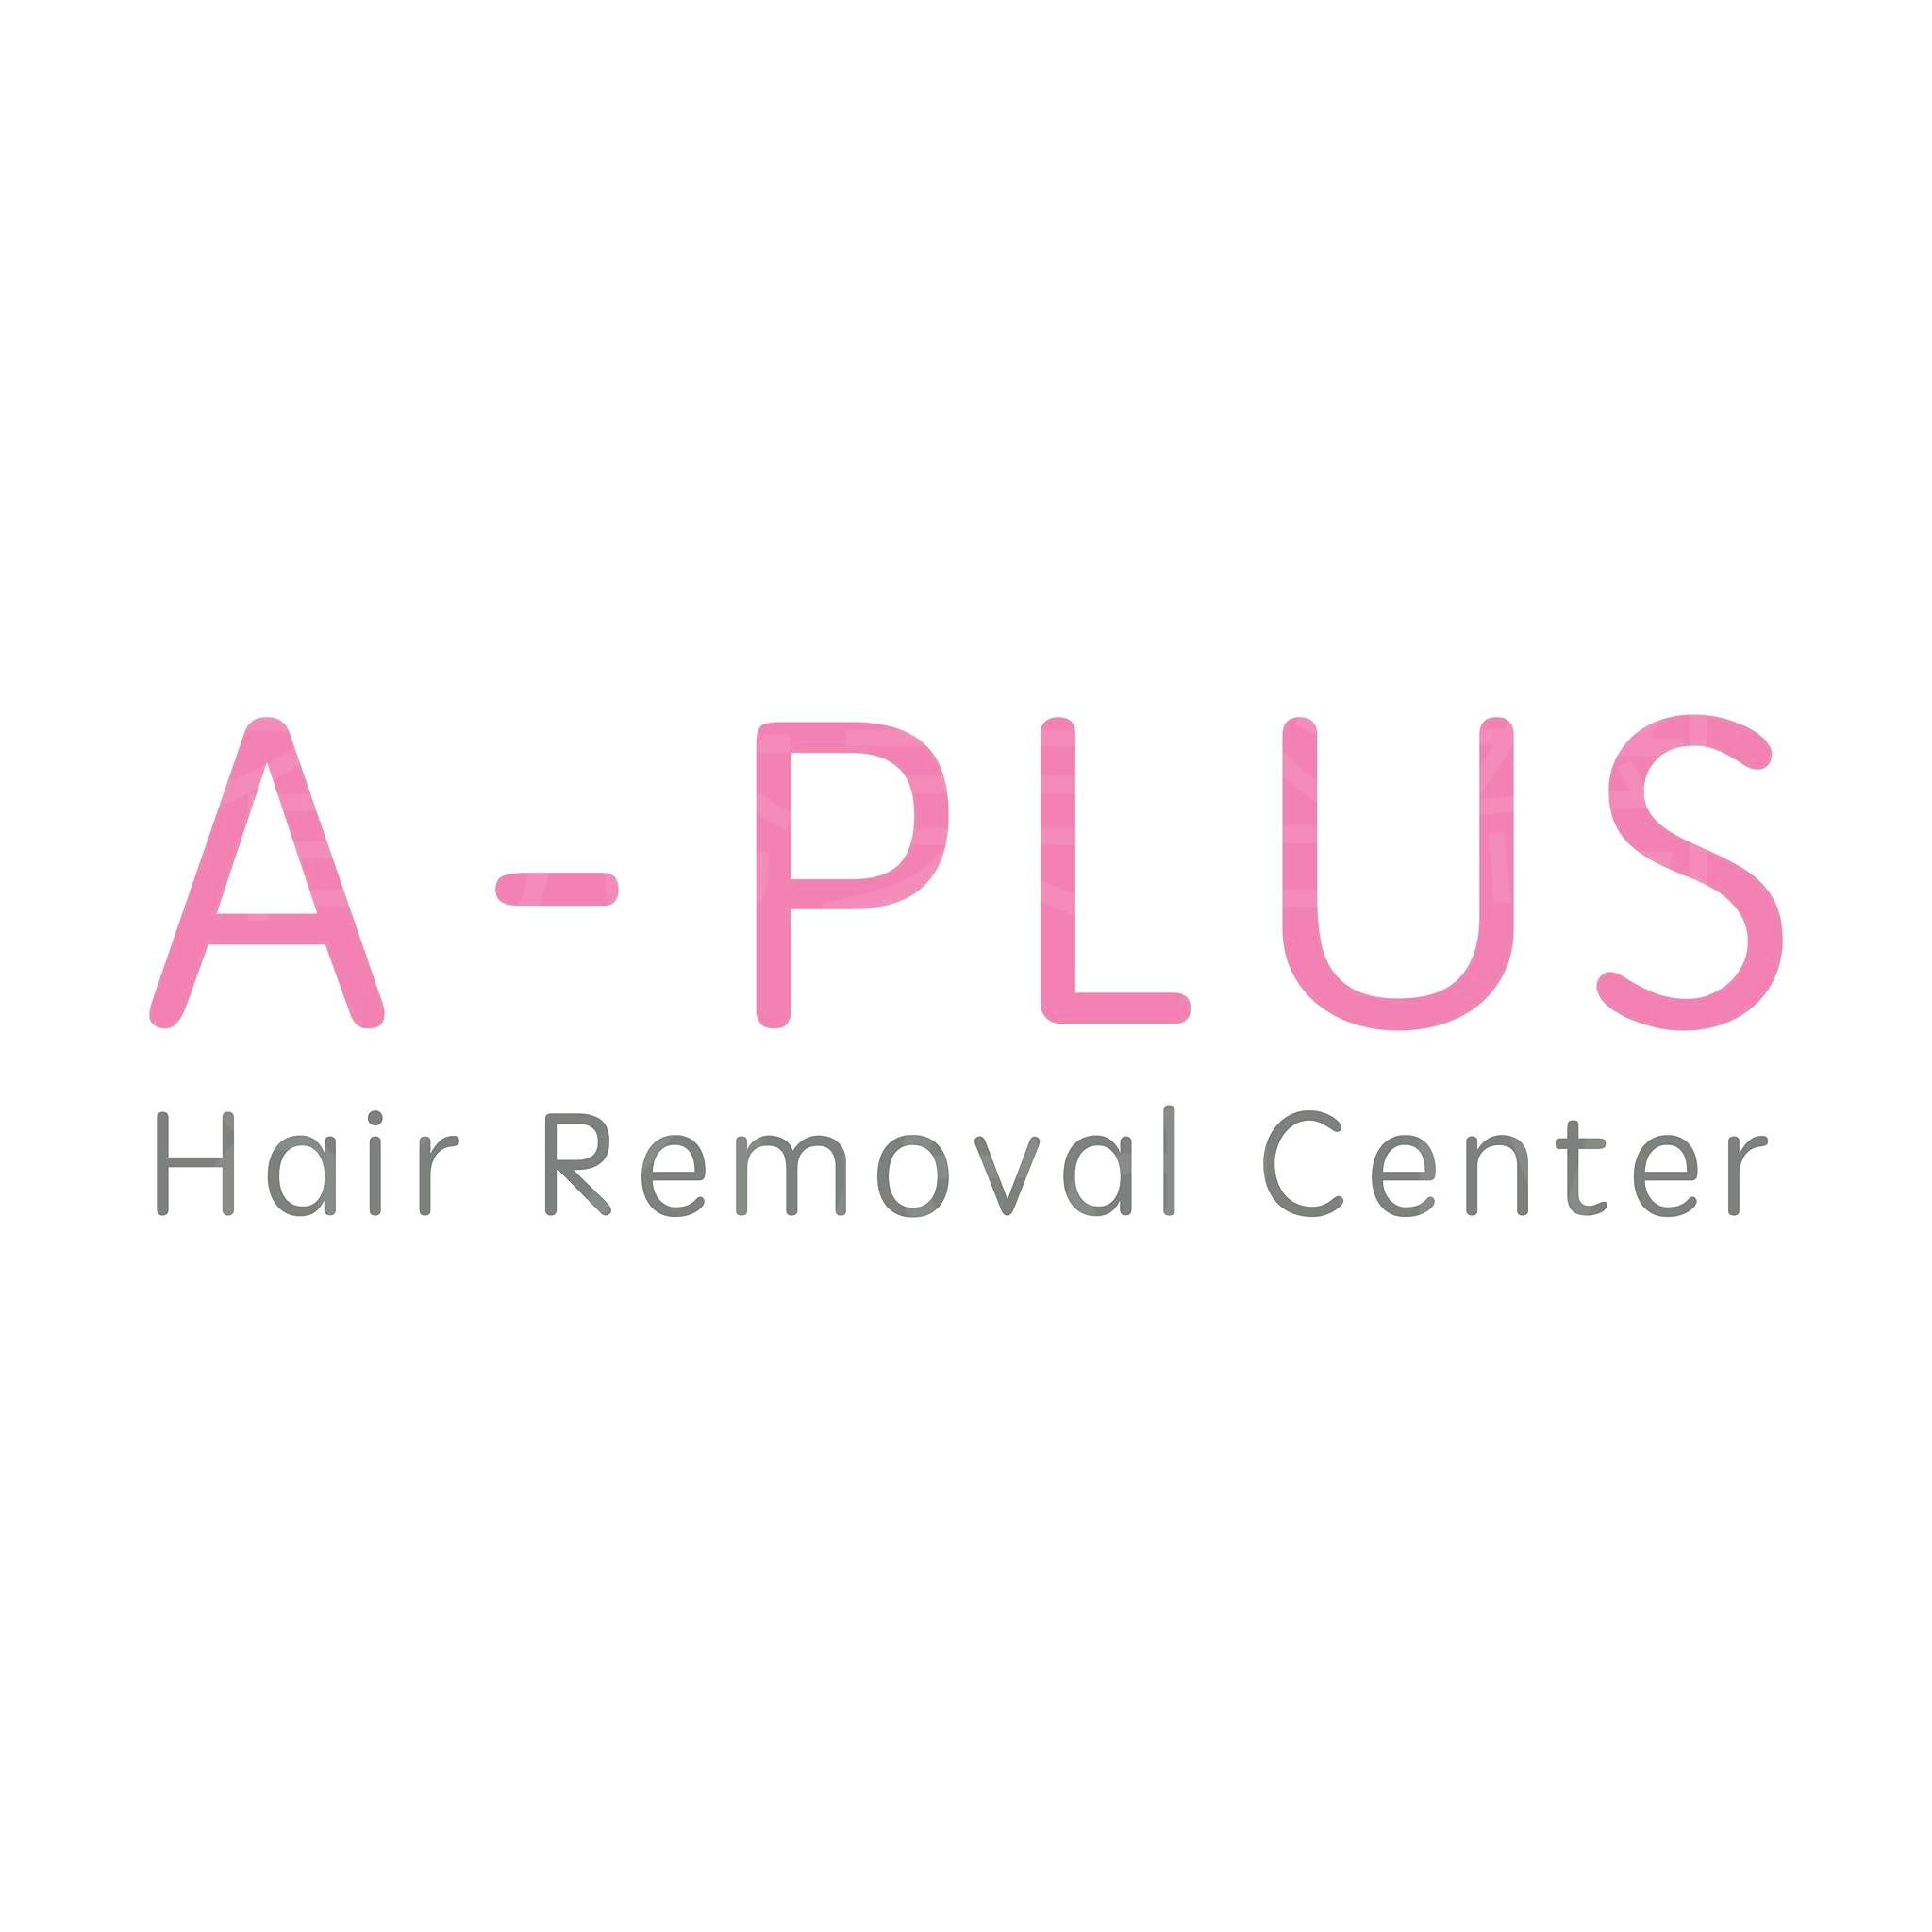 香港美容網 Hong Kong Beauty Salon 美容院 / 美容師: A-PLUS Hair Removal Center 激光脫毛中心 (尖沙咀店)